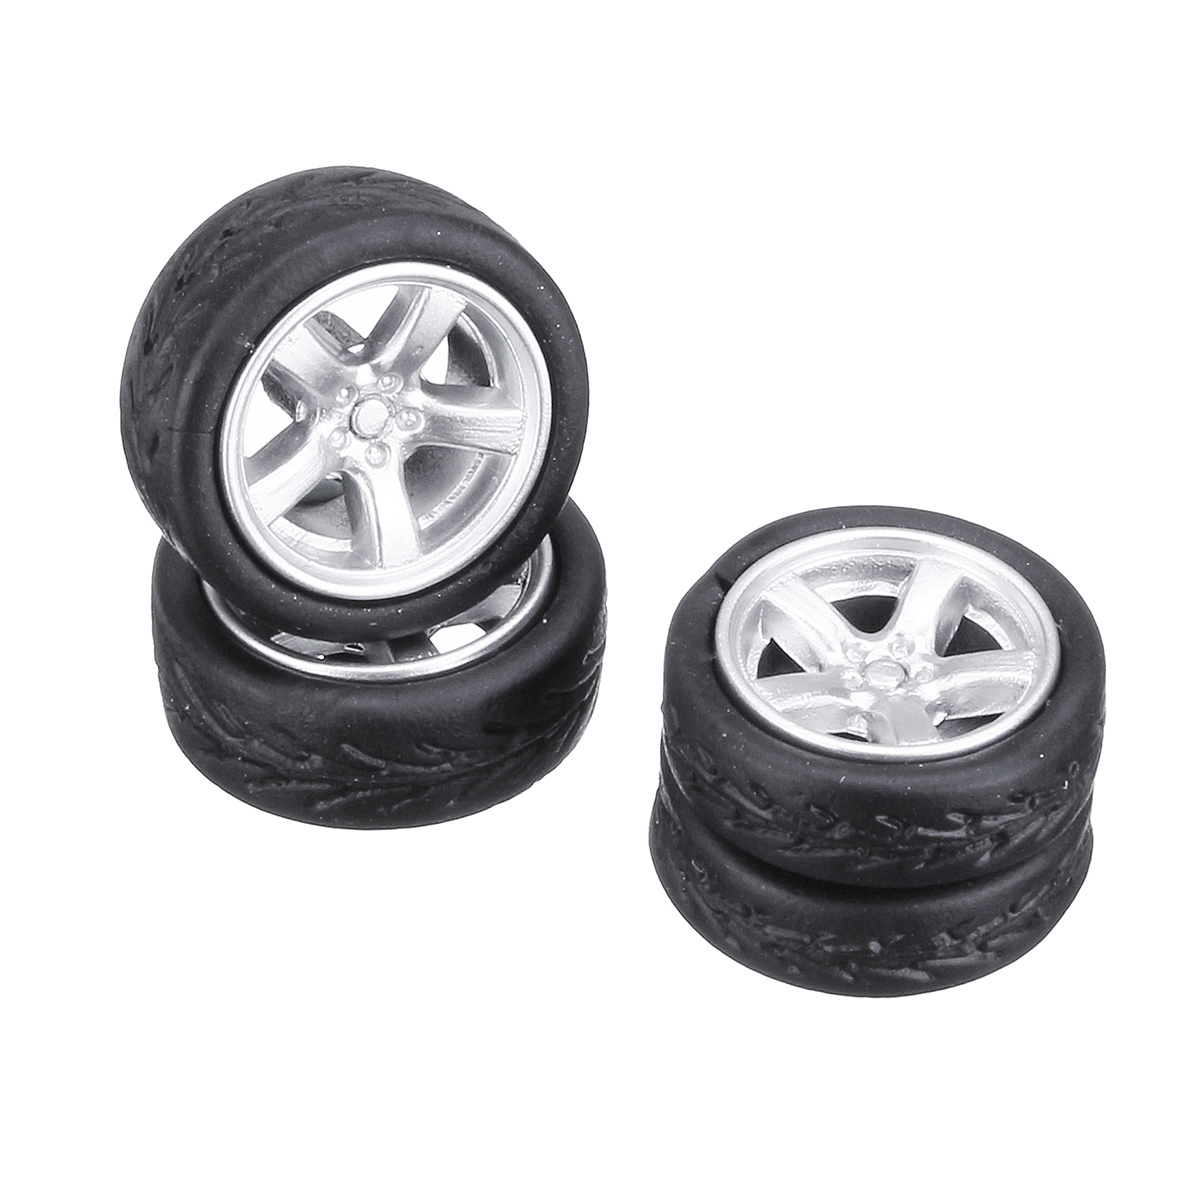 4PCS roues en alliage pneu ensemble jantes et essieux modele de voiture pour 1/64 modifie vehicule 